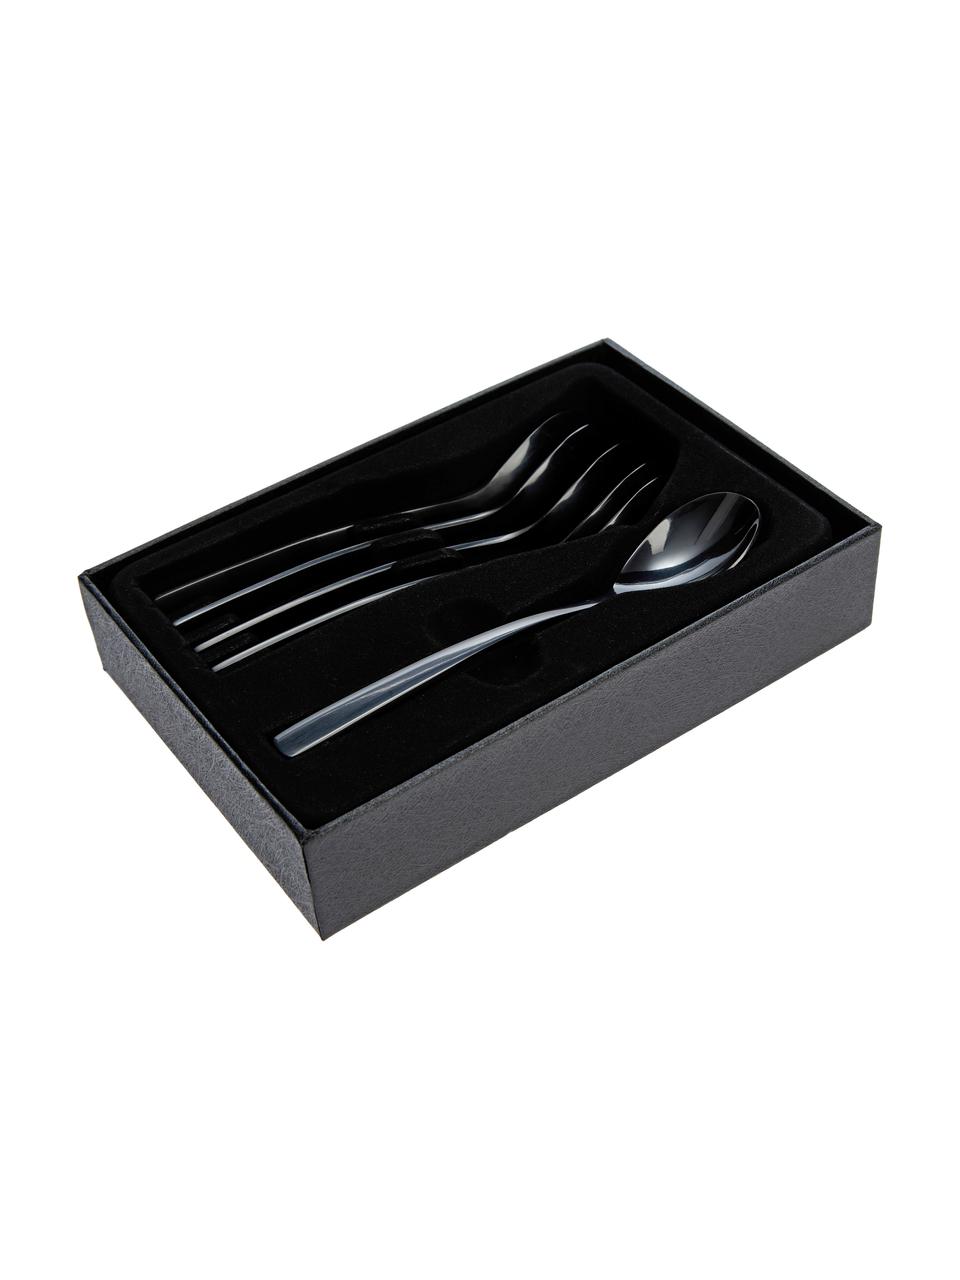 Teelöffel Shinko in Schwarz glänzend, 6 Stück, Edelstahl

Das Besteck ist aus Edelstahl gefertigt. Somit ist es langlebig, rostet nicht und ist resistent gegen Bakterien., Schwarz, hochglanzpoliert, L 14 cm